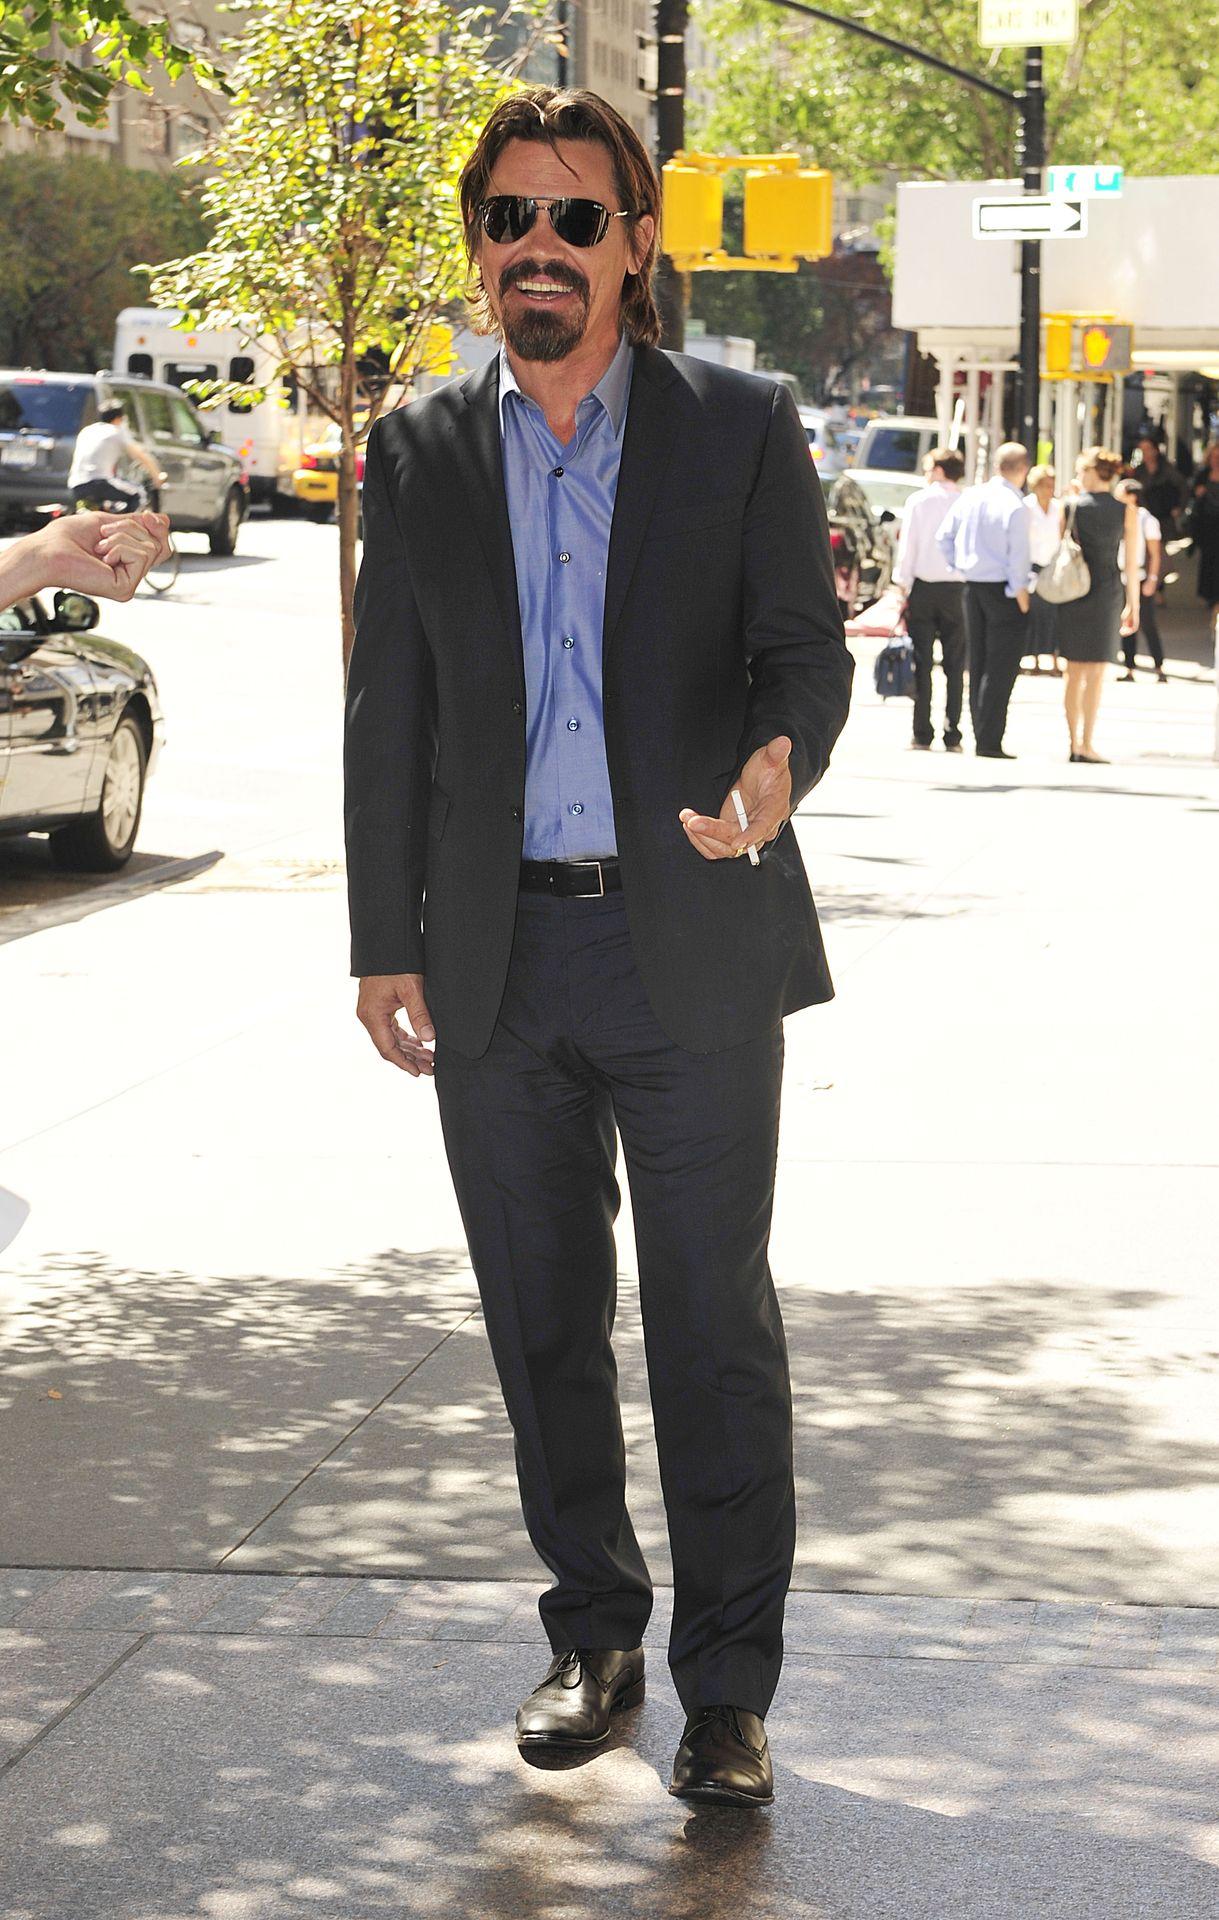 Josh på kändistät modeshow i New York Här anländer Hollywoodstjärnan Josh Brolin.